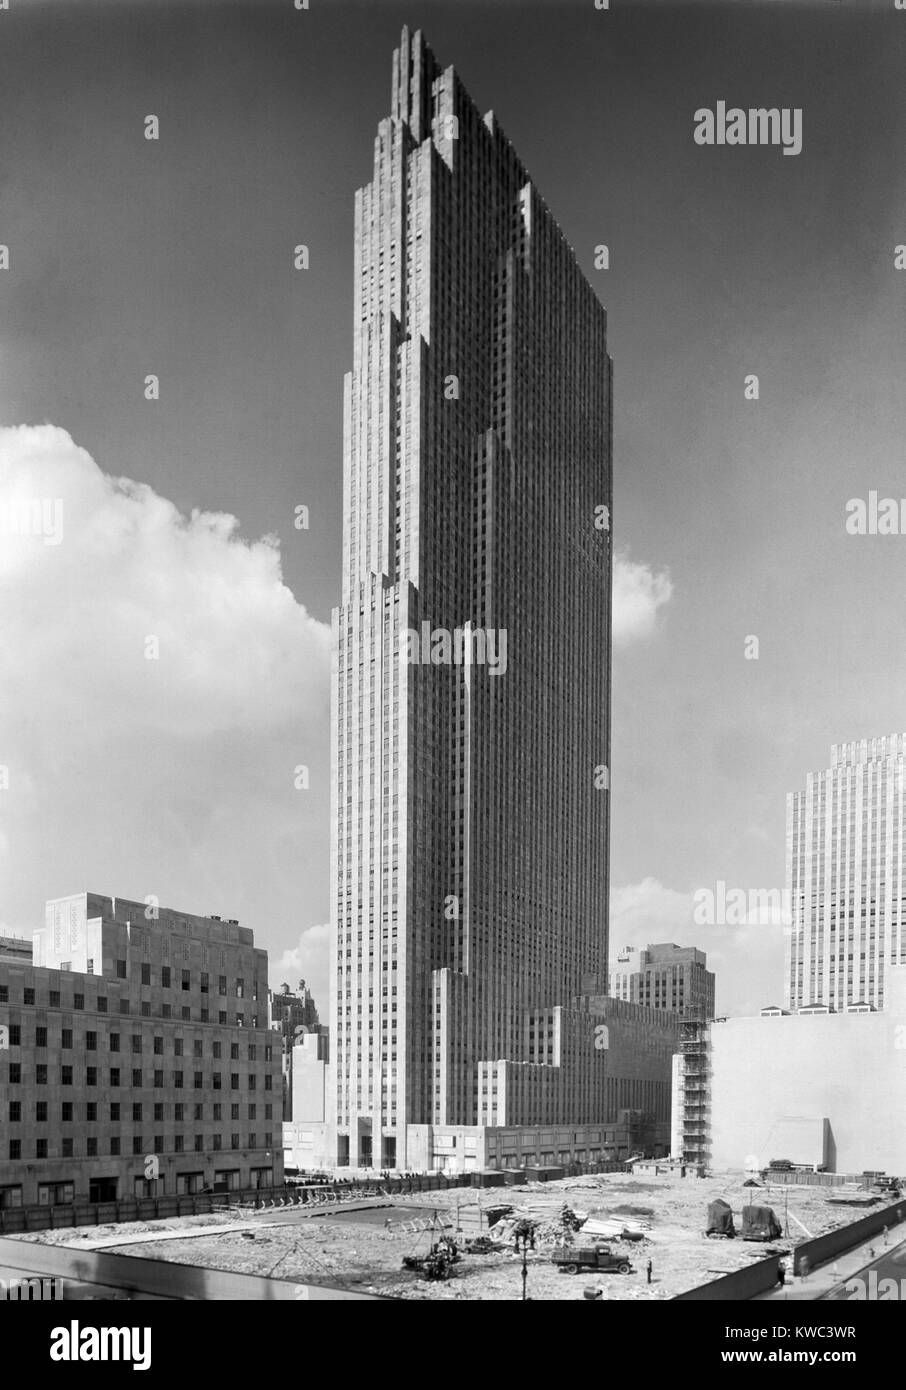 Il nuovo edificio RCA in Rockefeller Center il 7 settembre 1, 1933. I lotti adiacenti attendono la costruzione. Era il caratteristico edificio del complesso di 19 edifici commerciali tra la 48th e la 51st strade di New York città costruita tra il 1930 e il 1939. Foto di Samuel H. Gottscho. (BSLOC 2015 14 200) Foto Stock